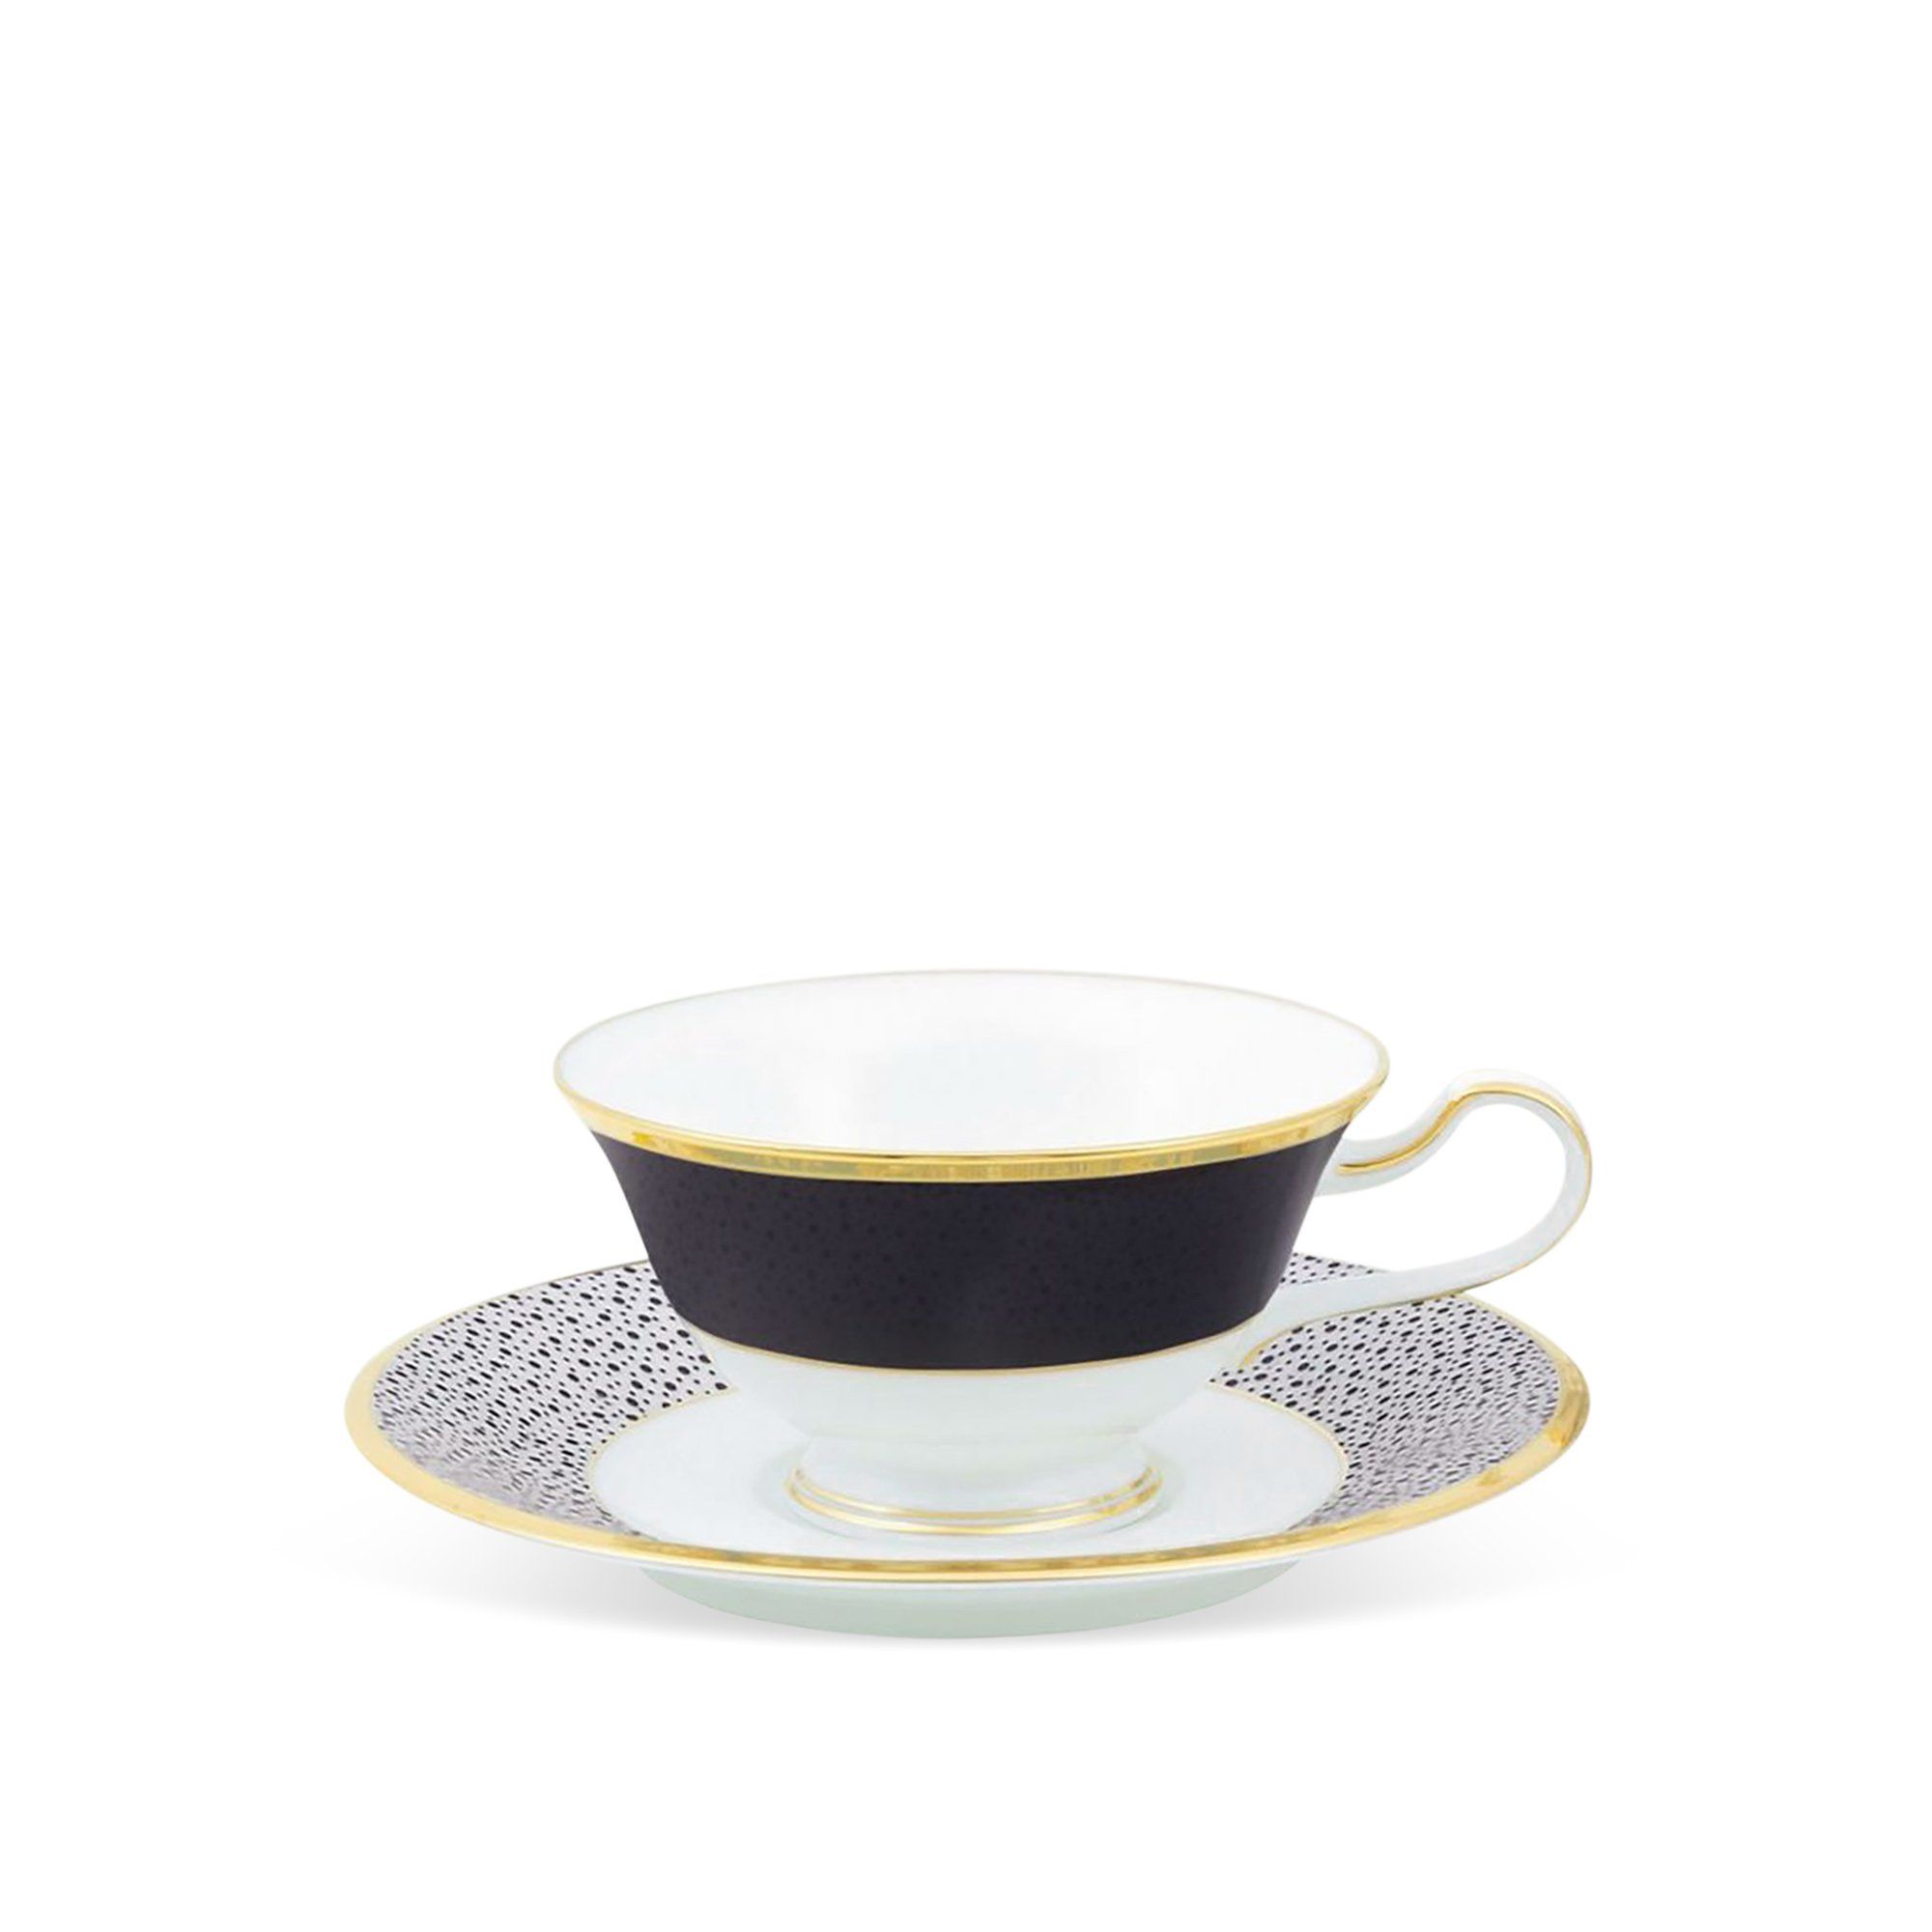  Chén trà (tách trà) dáng loe 220ml kèm đĩa lót đen | Sumi Komon 4949J-T59587 